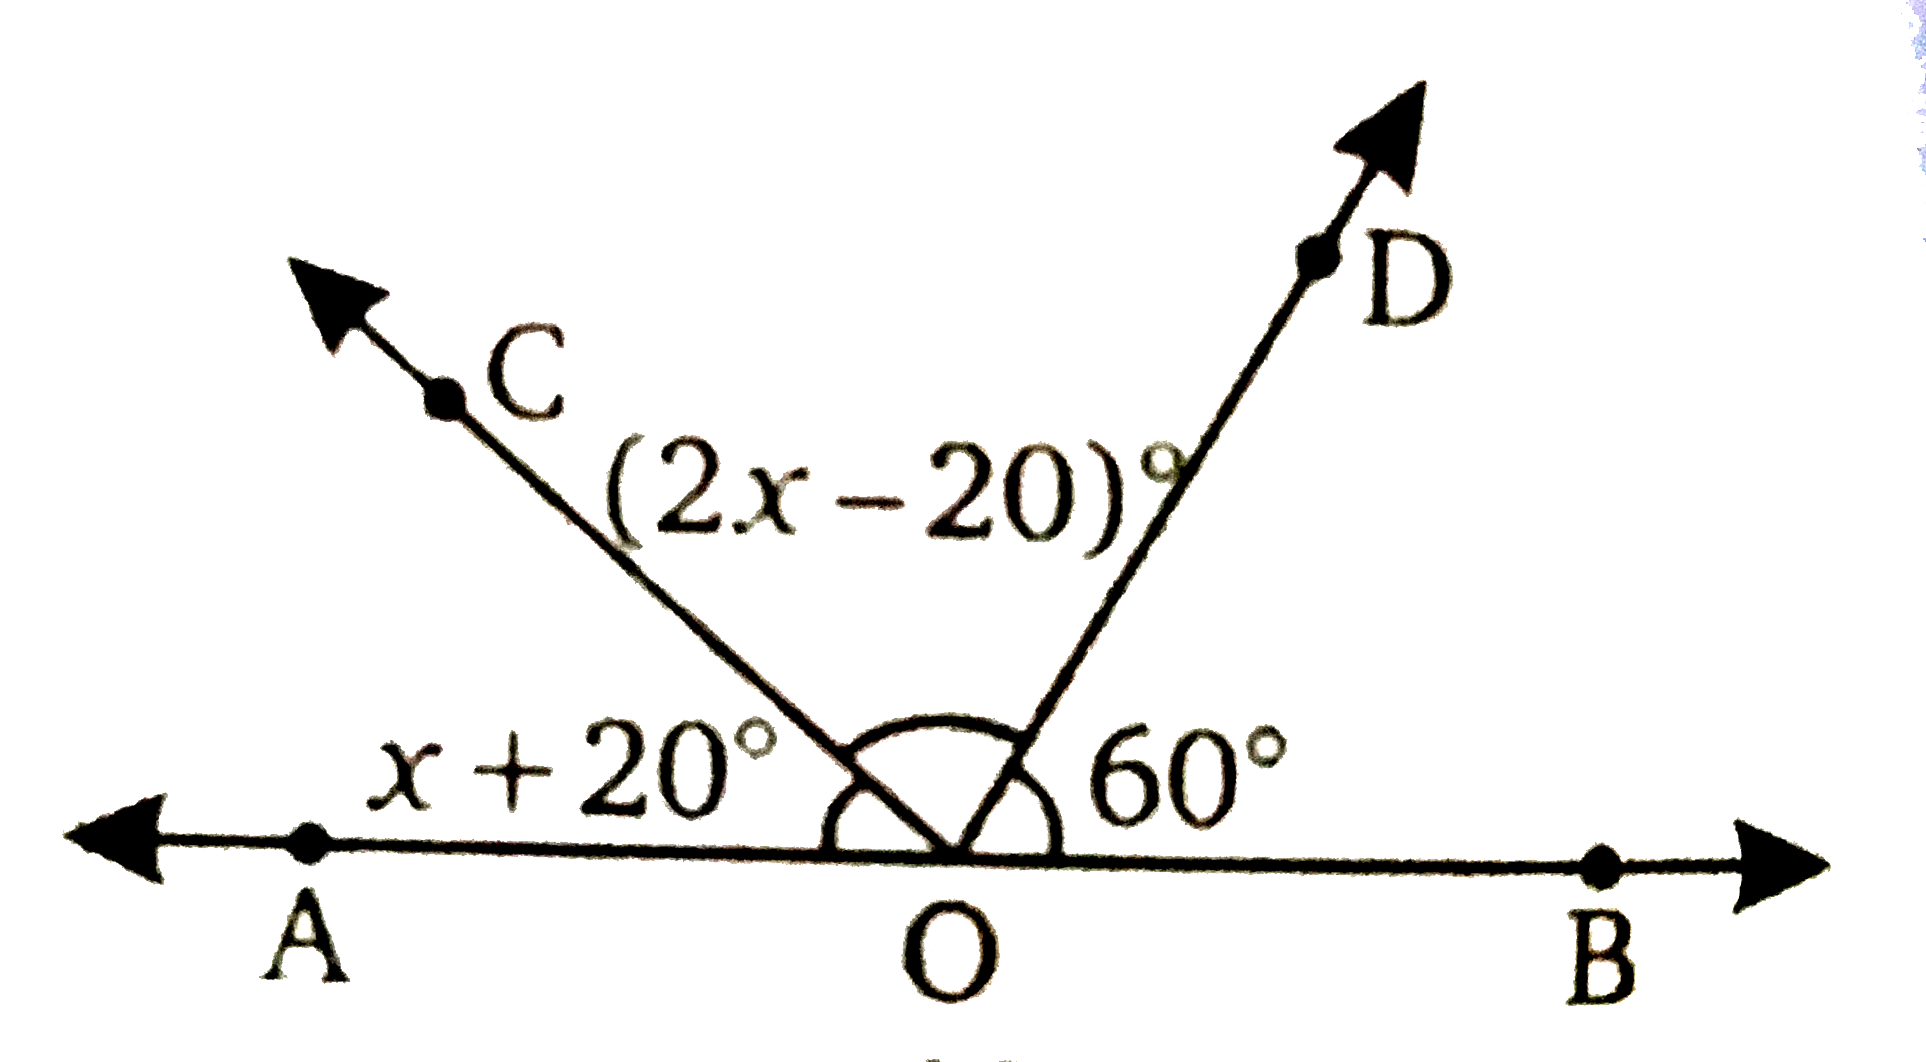 संलग्न चित्र में, AOB एक सरल रेखा है , angleCOD की माप =